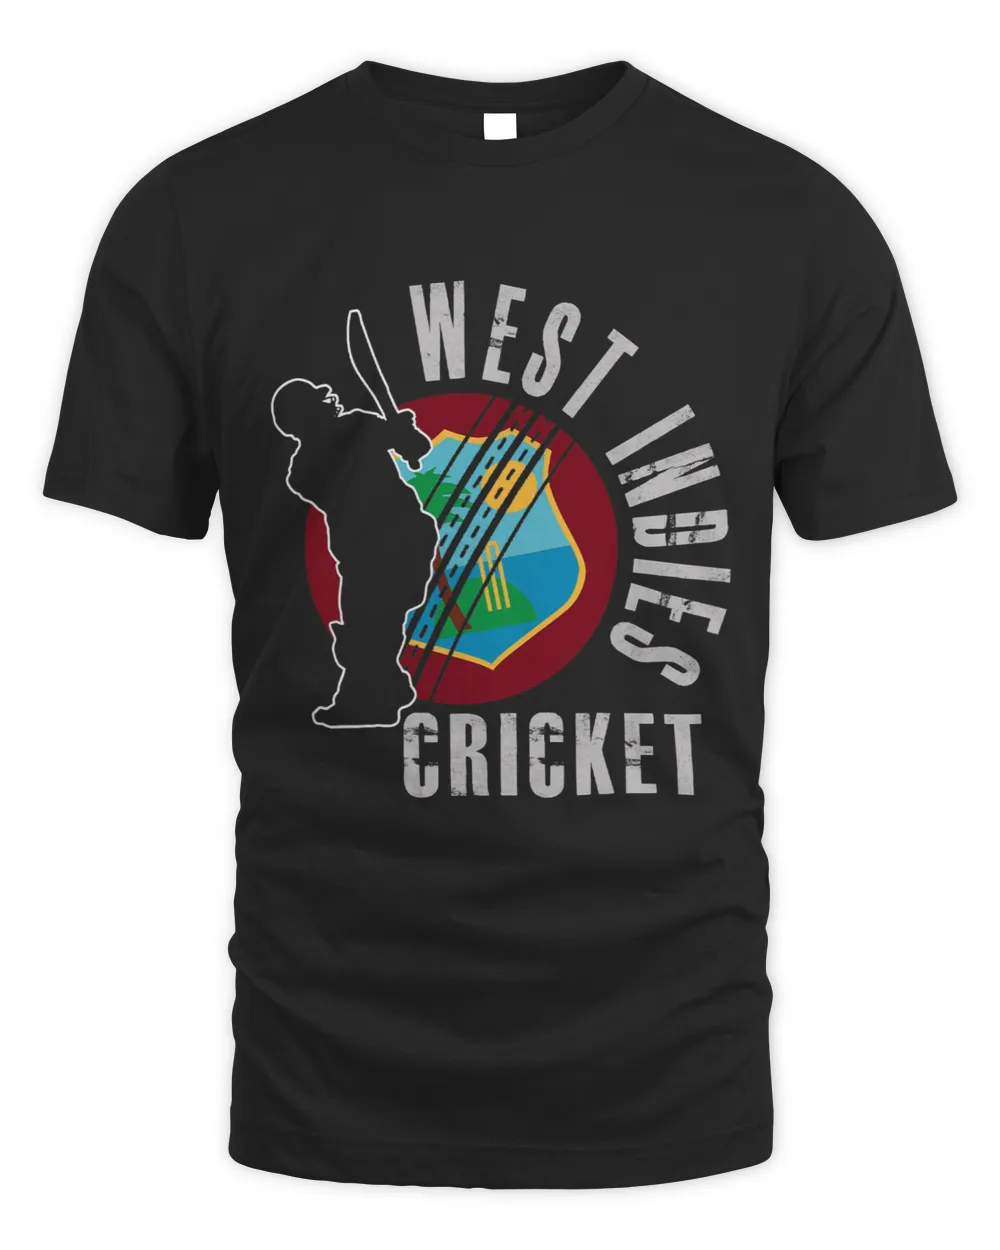 Cricket Fan West Indies Cricket Team Support Design Gift